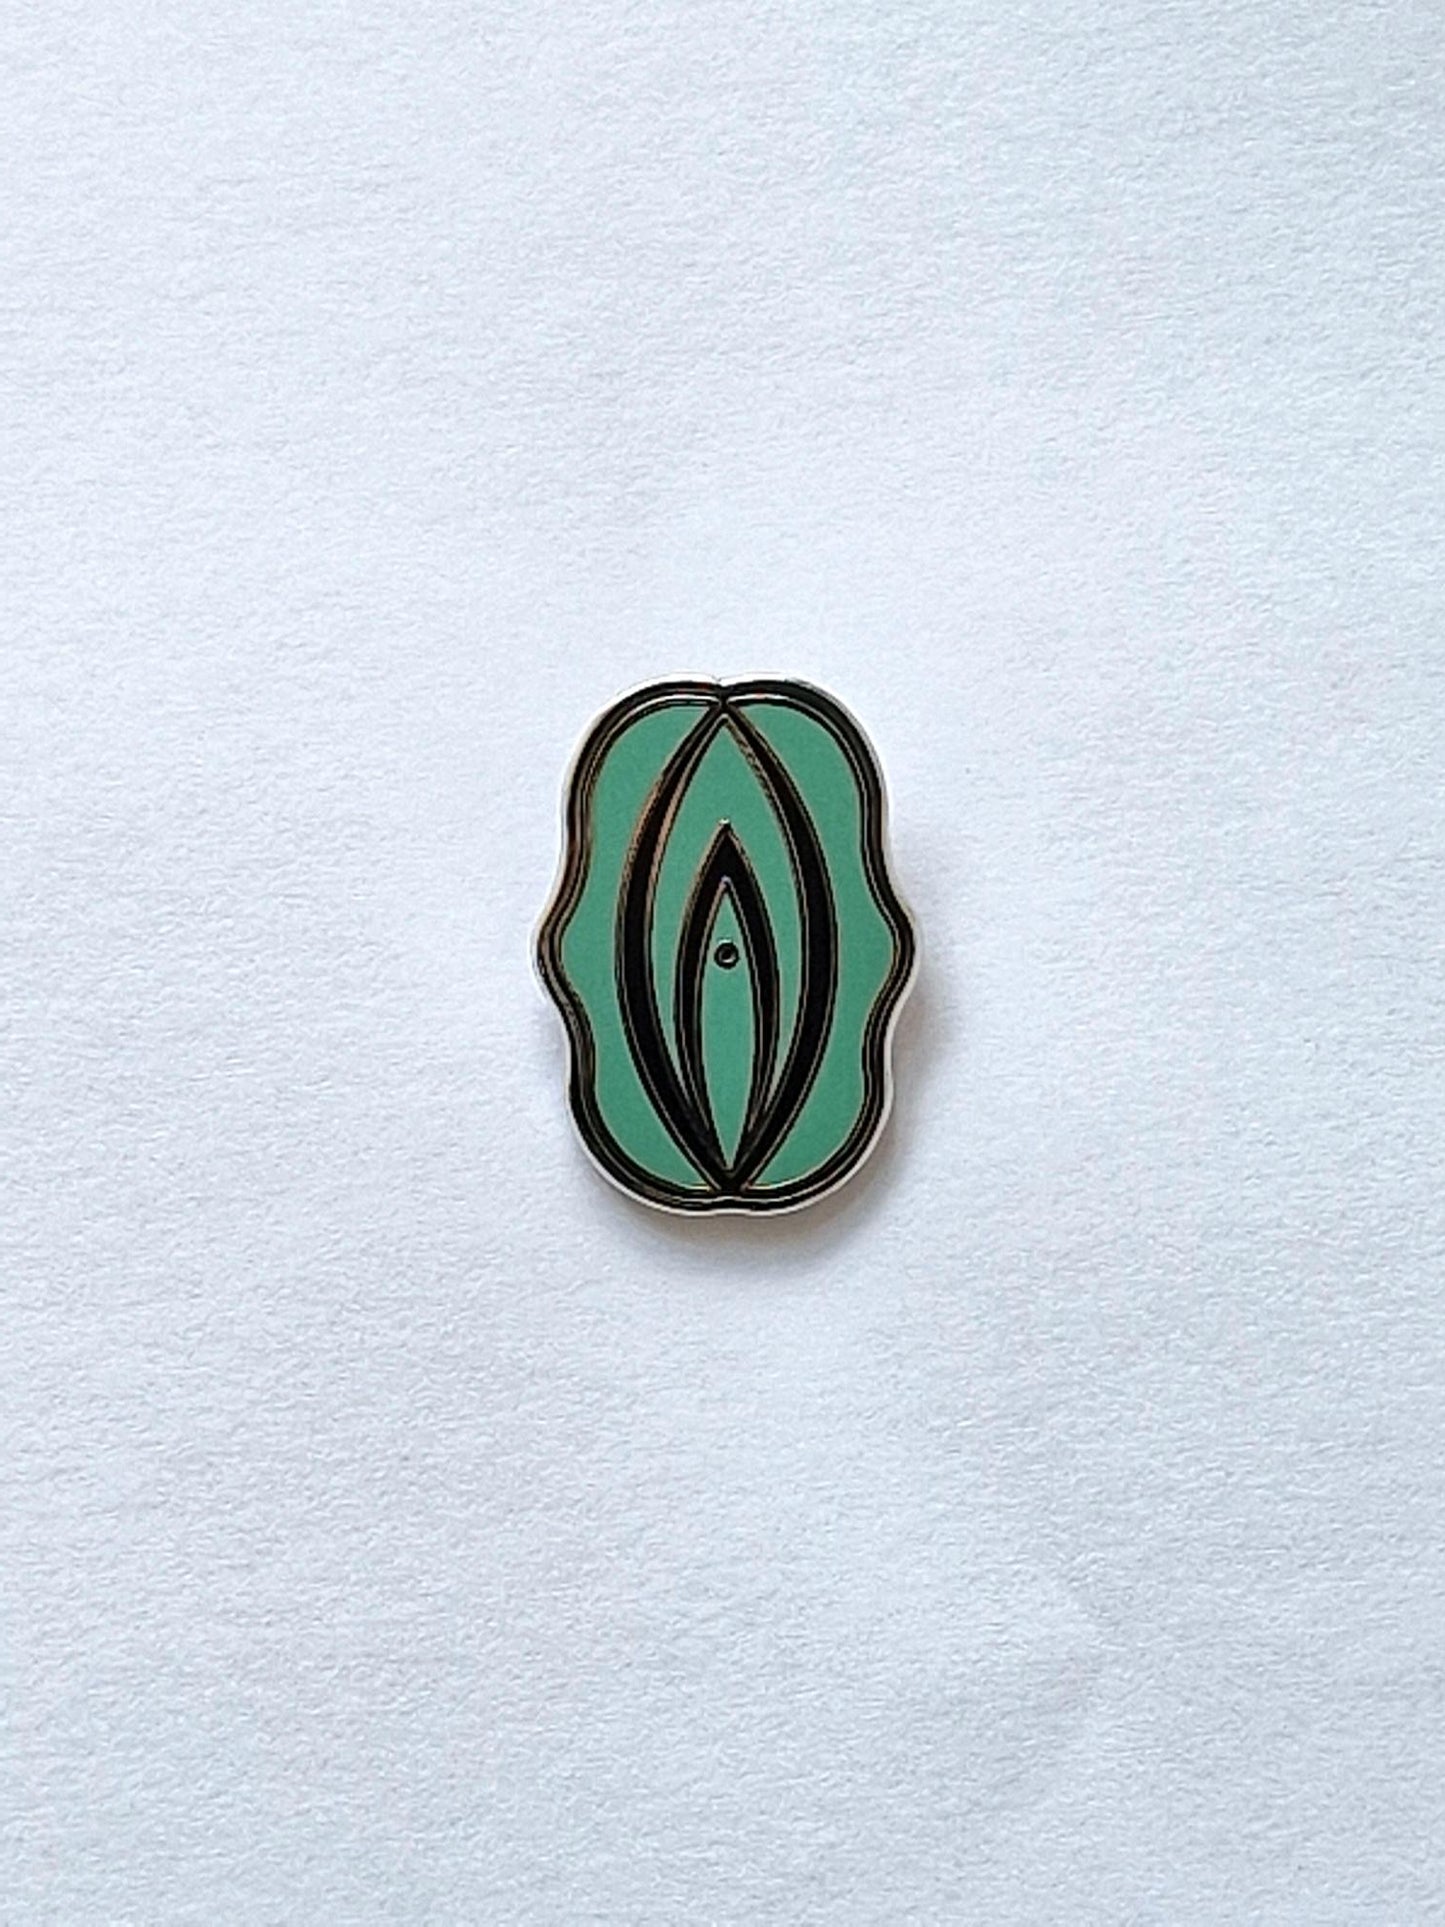 Rolig och personlig pins i form av en grön och svart fiffi eller snippa.